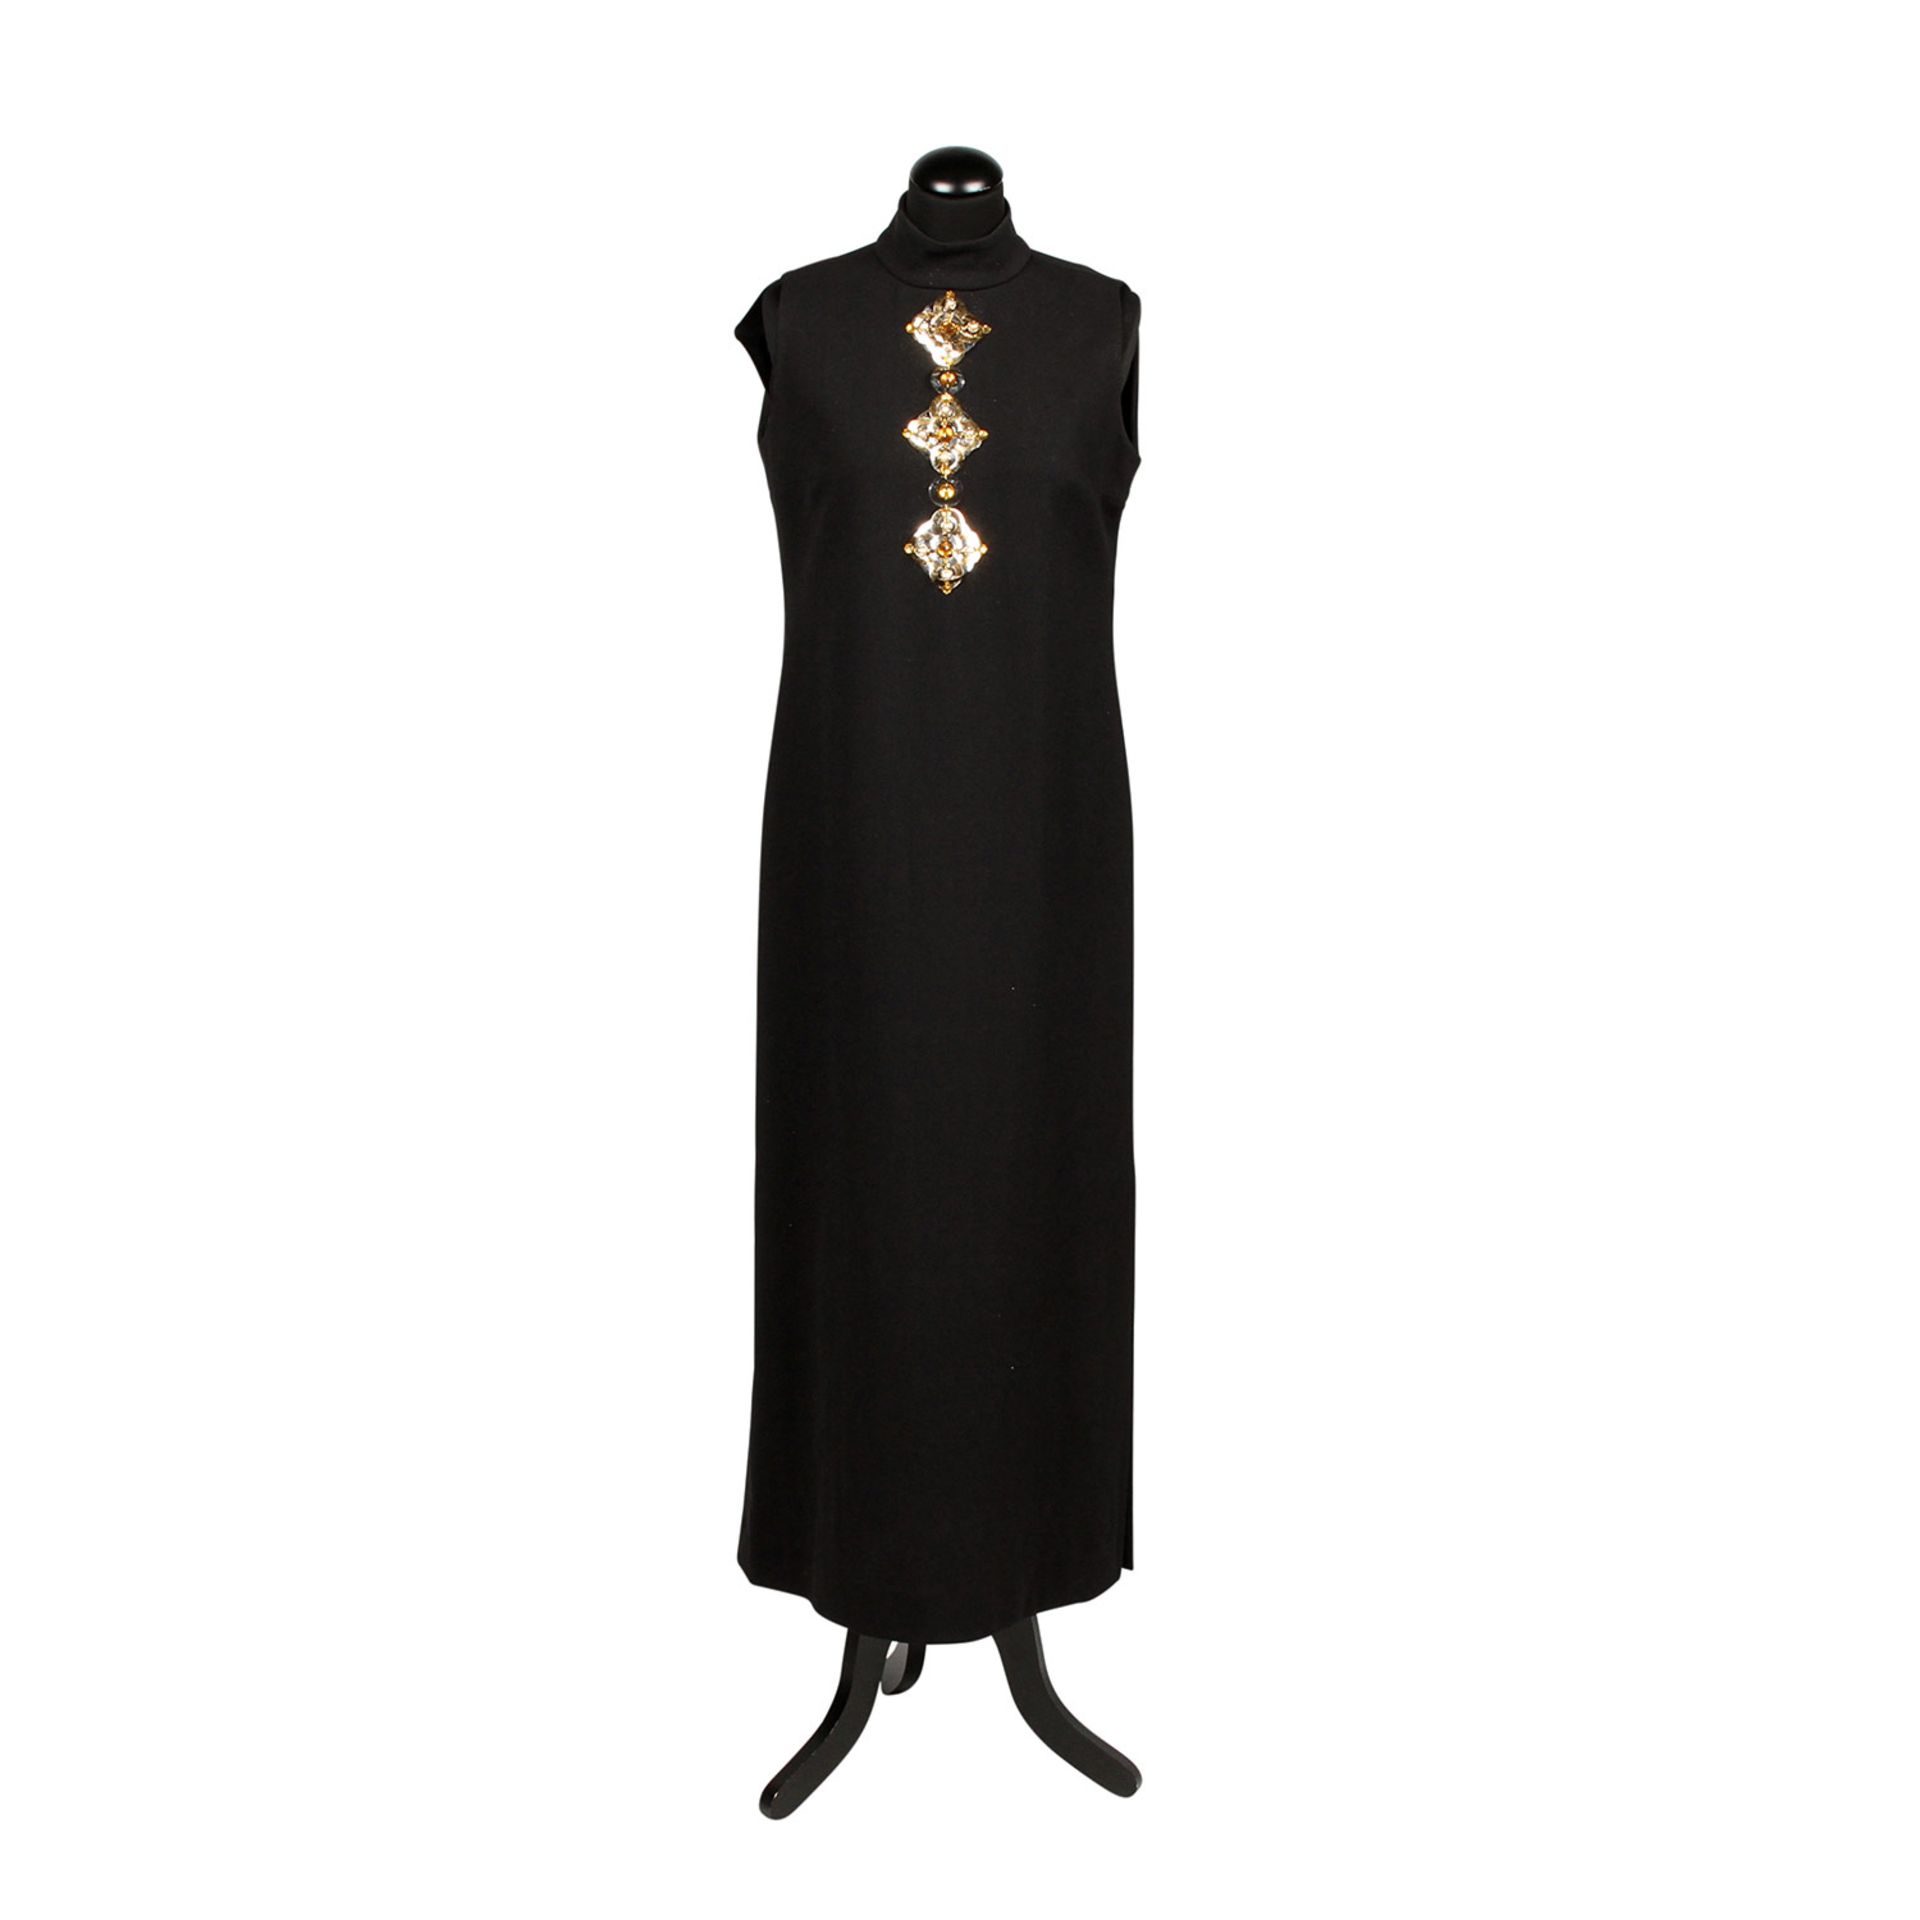 POLLY PECK Abendkleid aus dem Privatbesitz von Doris Haug, 1980er JahreBodenlanges, schwarzes